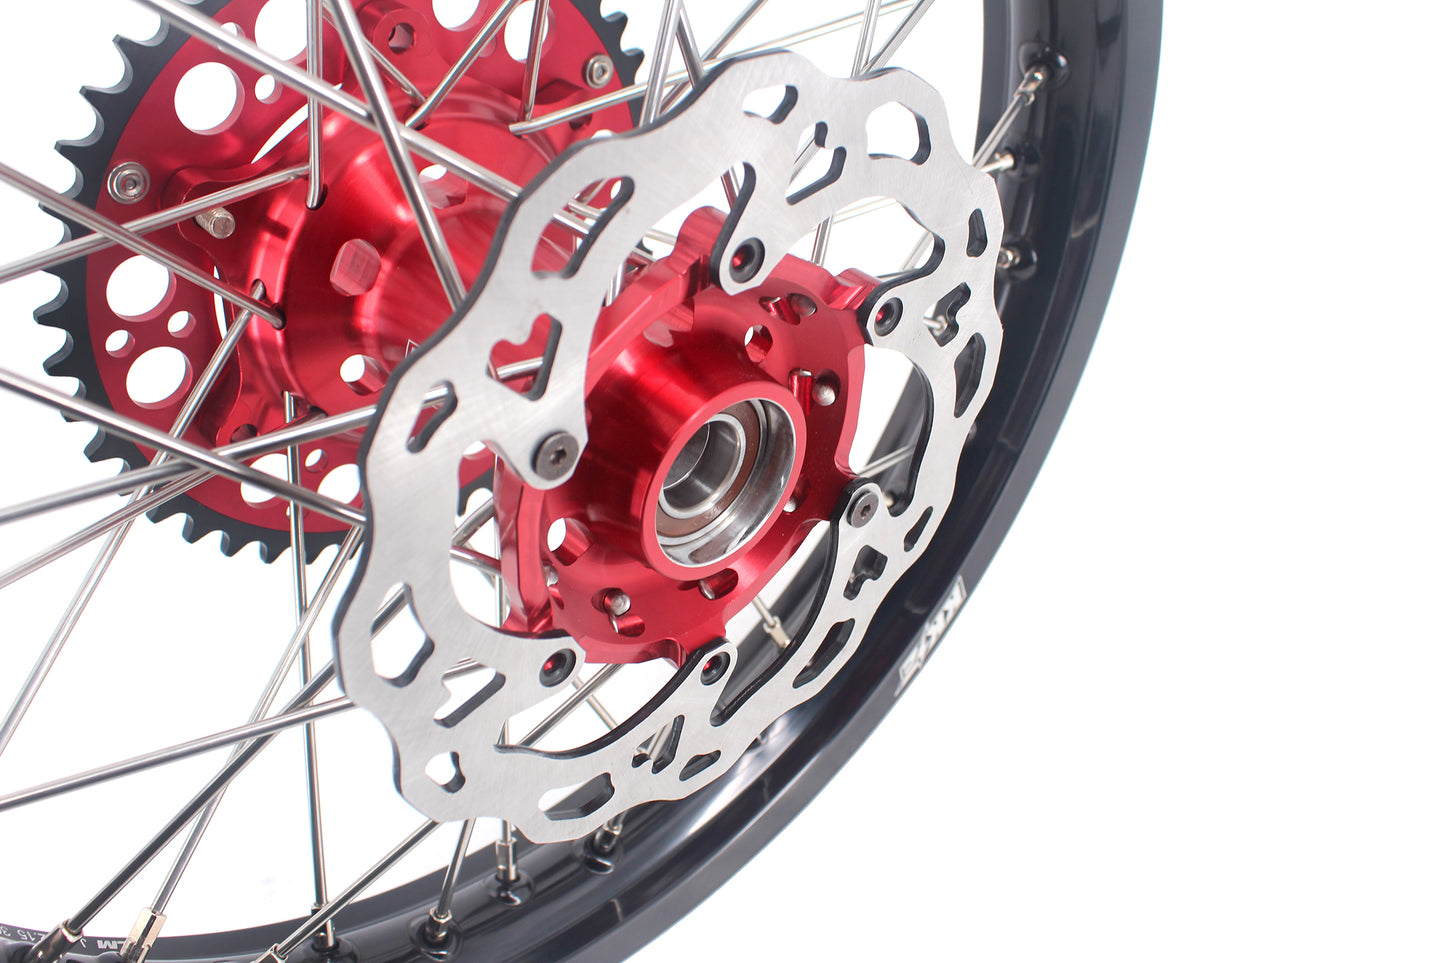 KKE 21" 19" Wheels For GAS GAS EC 250/300 MC125 2021-2024 Motorcycle Dirtbike Rims